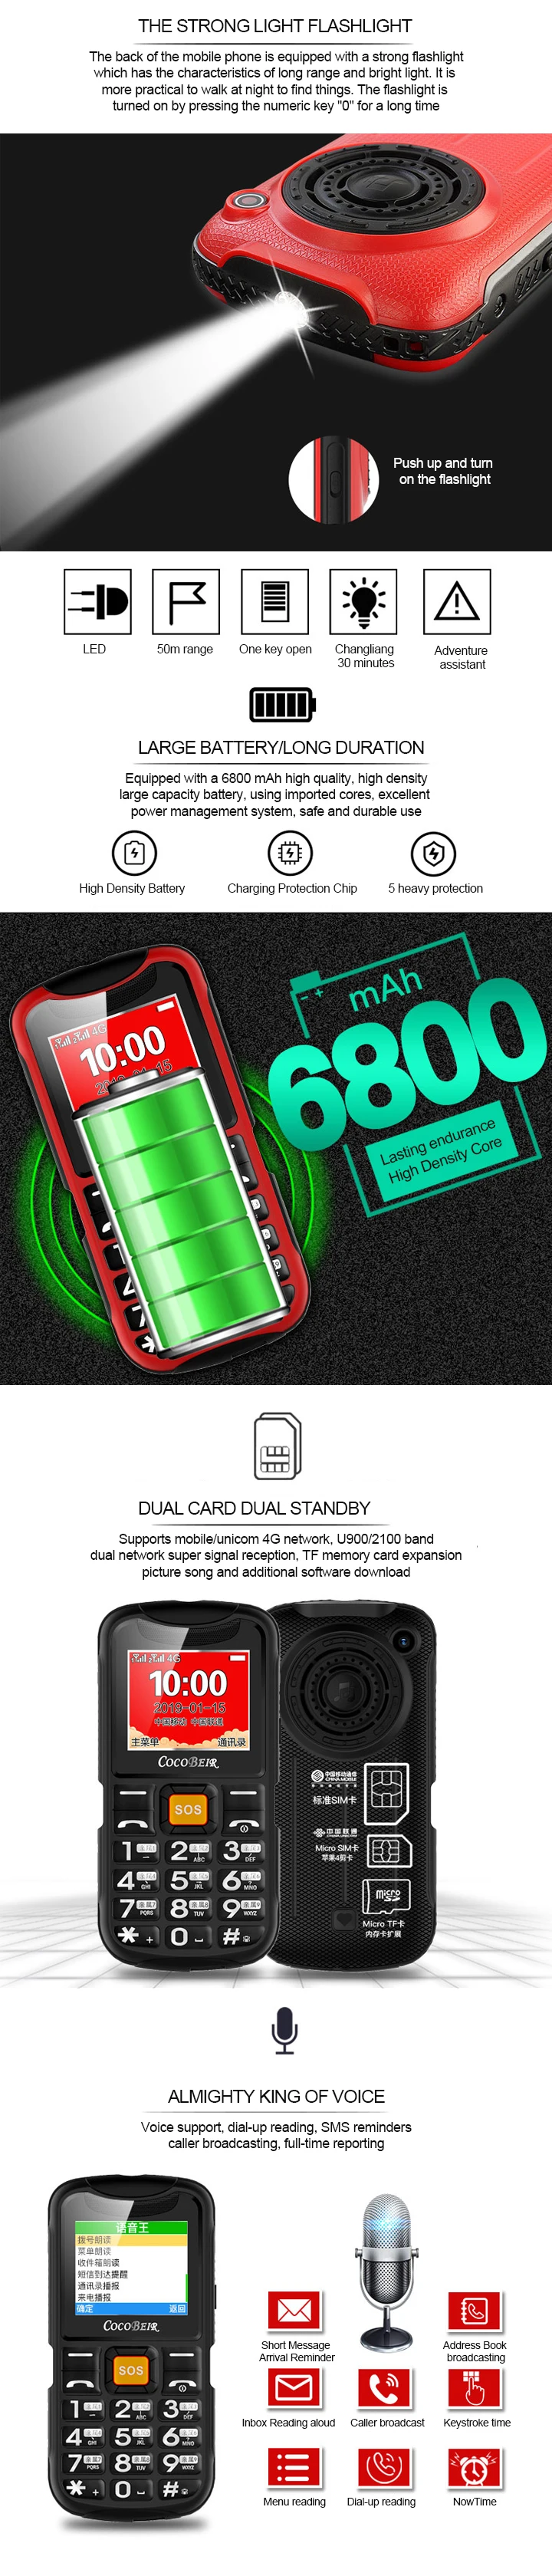 D900 пожилых людей аудио Flashboard большой рог речевого вещания 4G двойной карты двойной резервный фонарик мобильный телефон